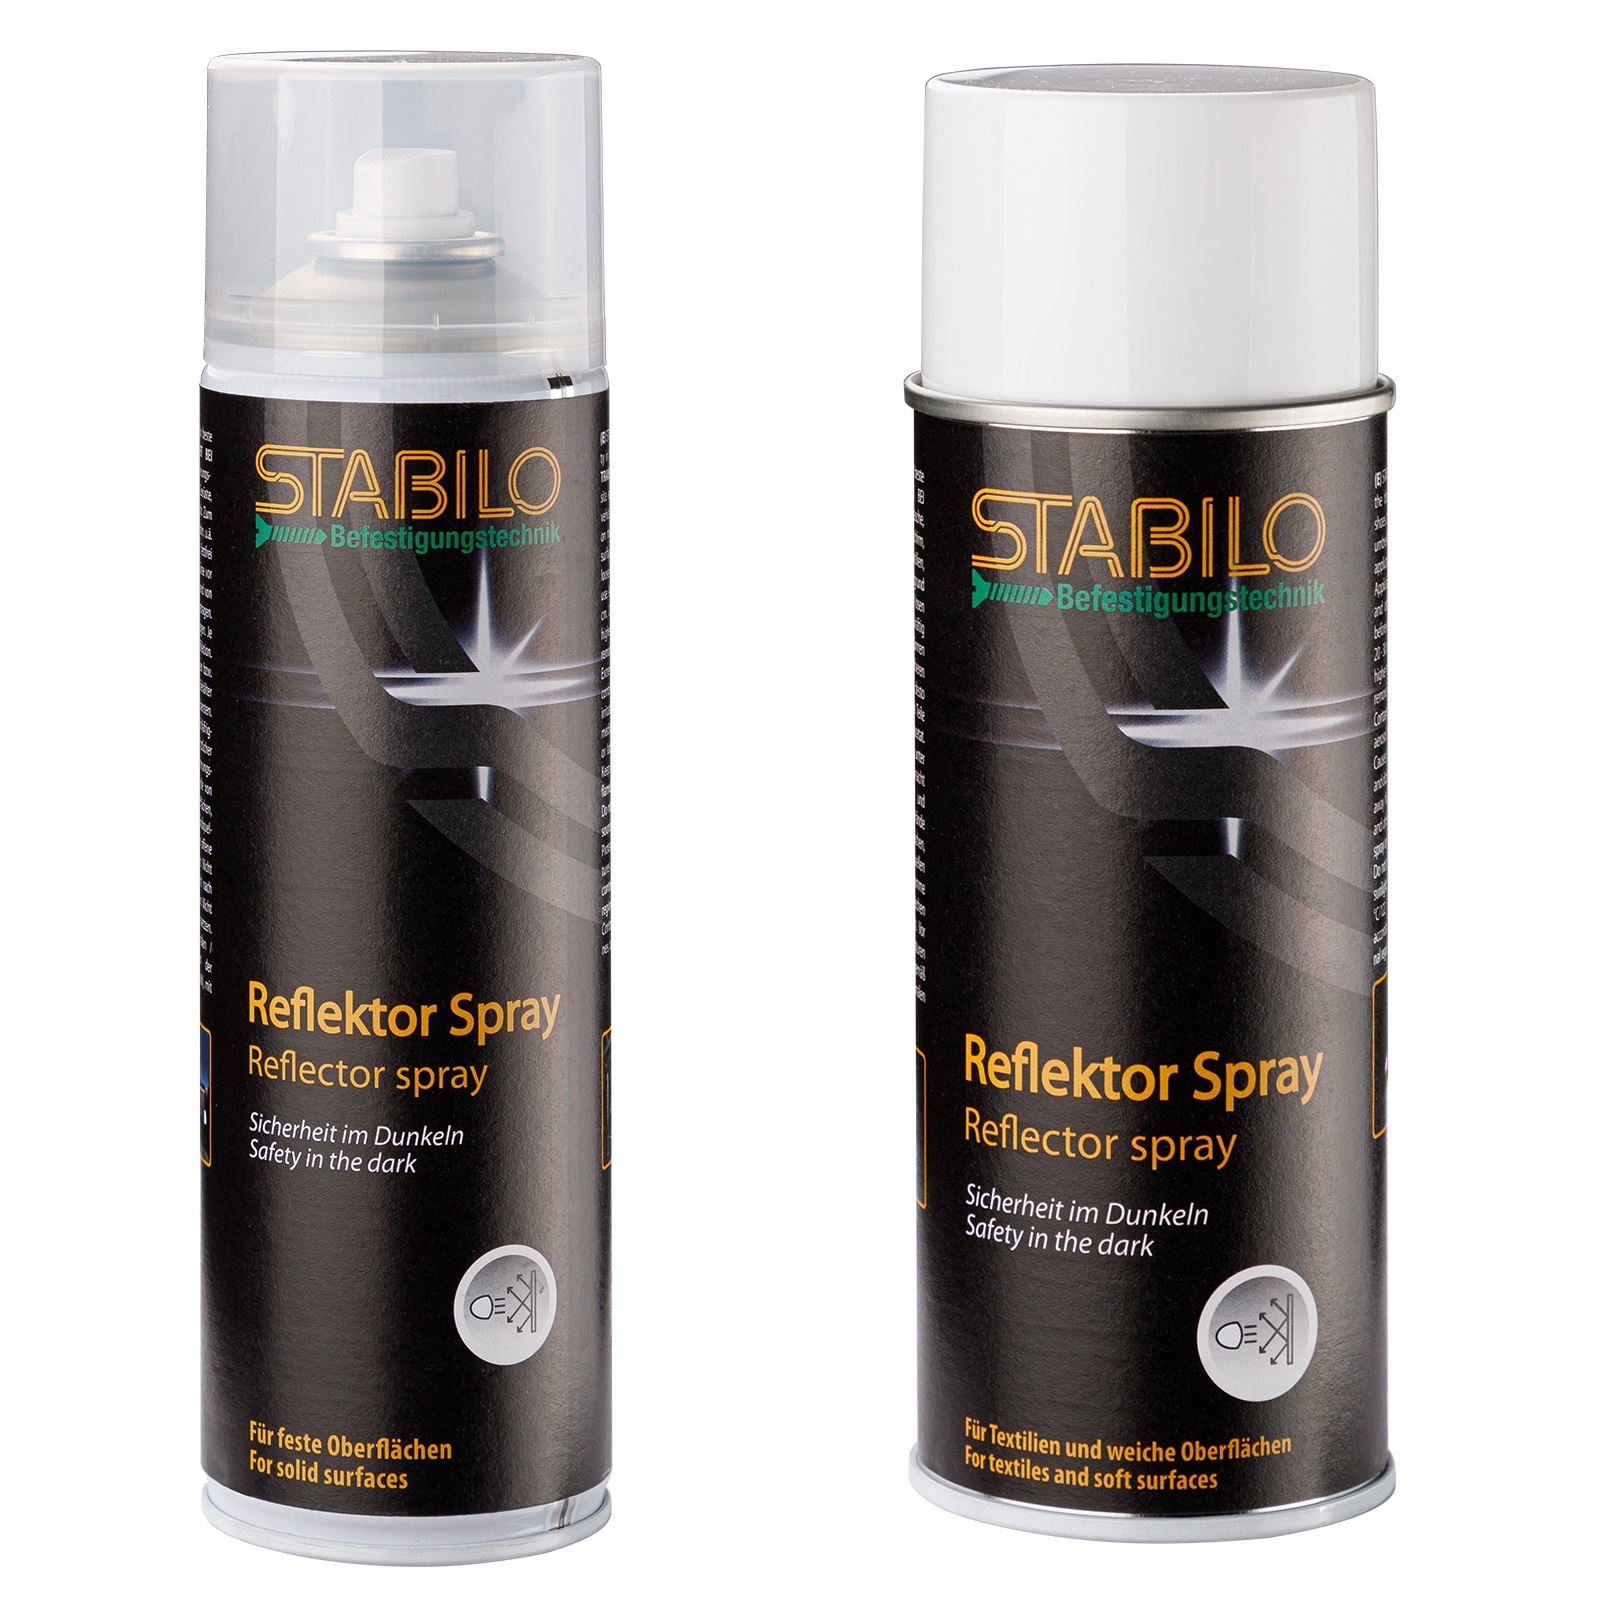 Stabilo Reflektor Spray, für Textilien, weiche oder harte Oberflächen